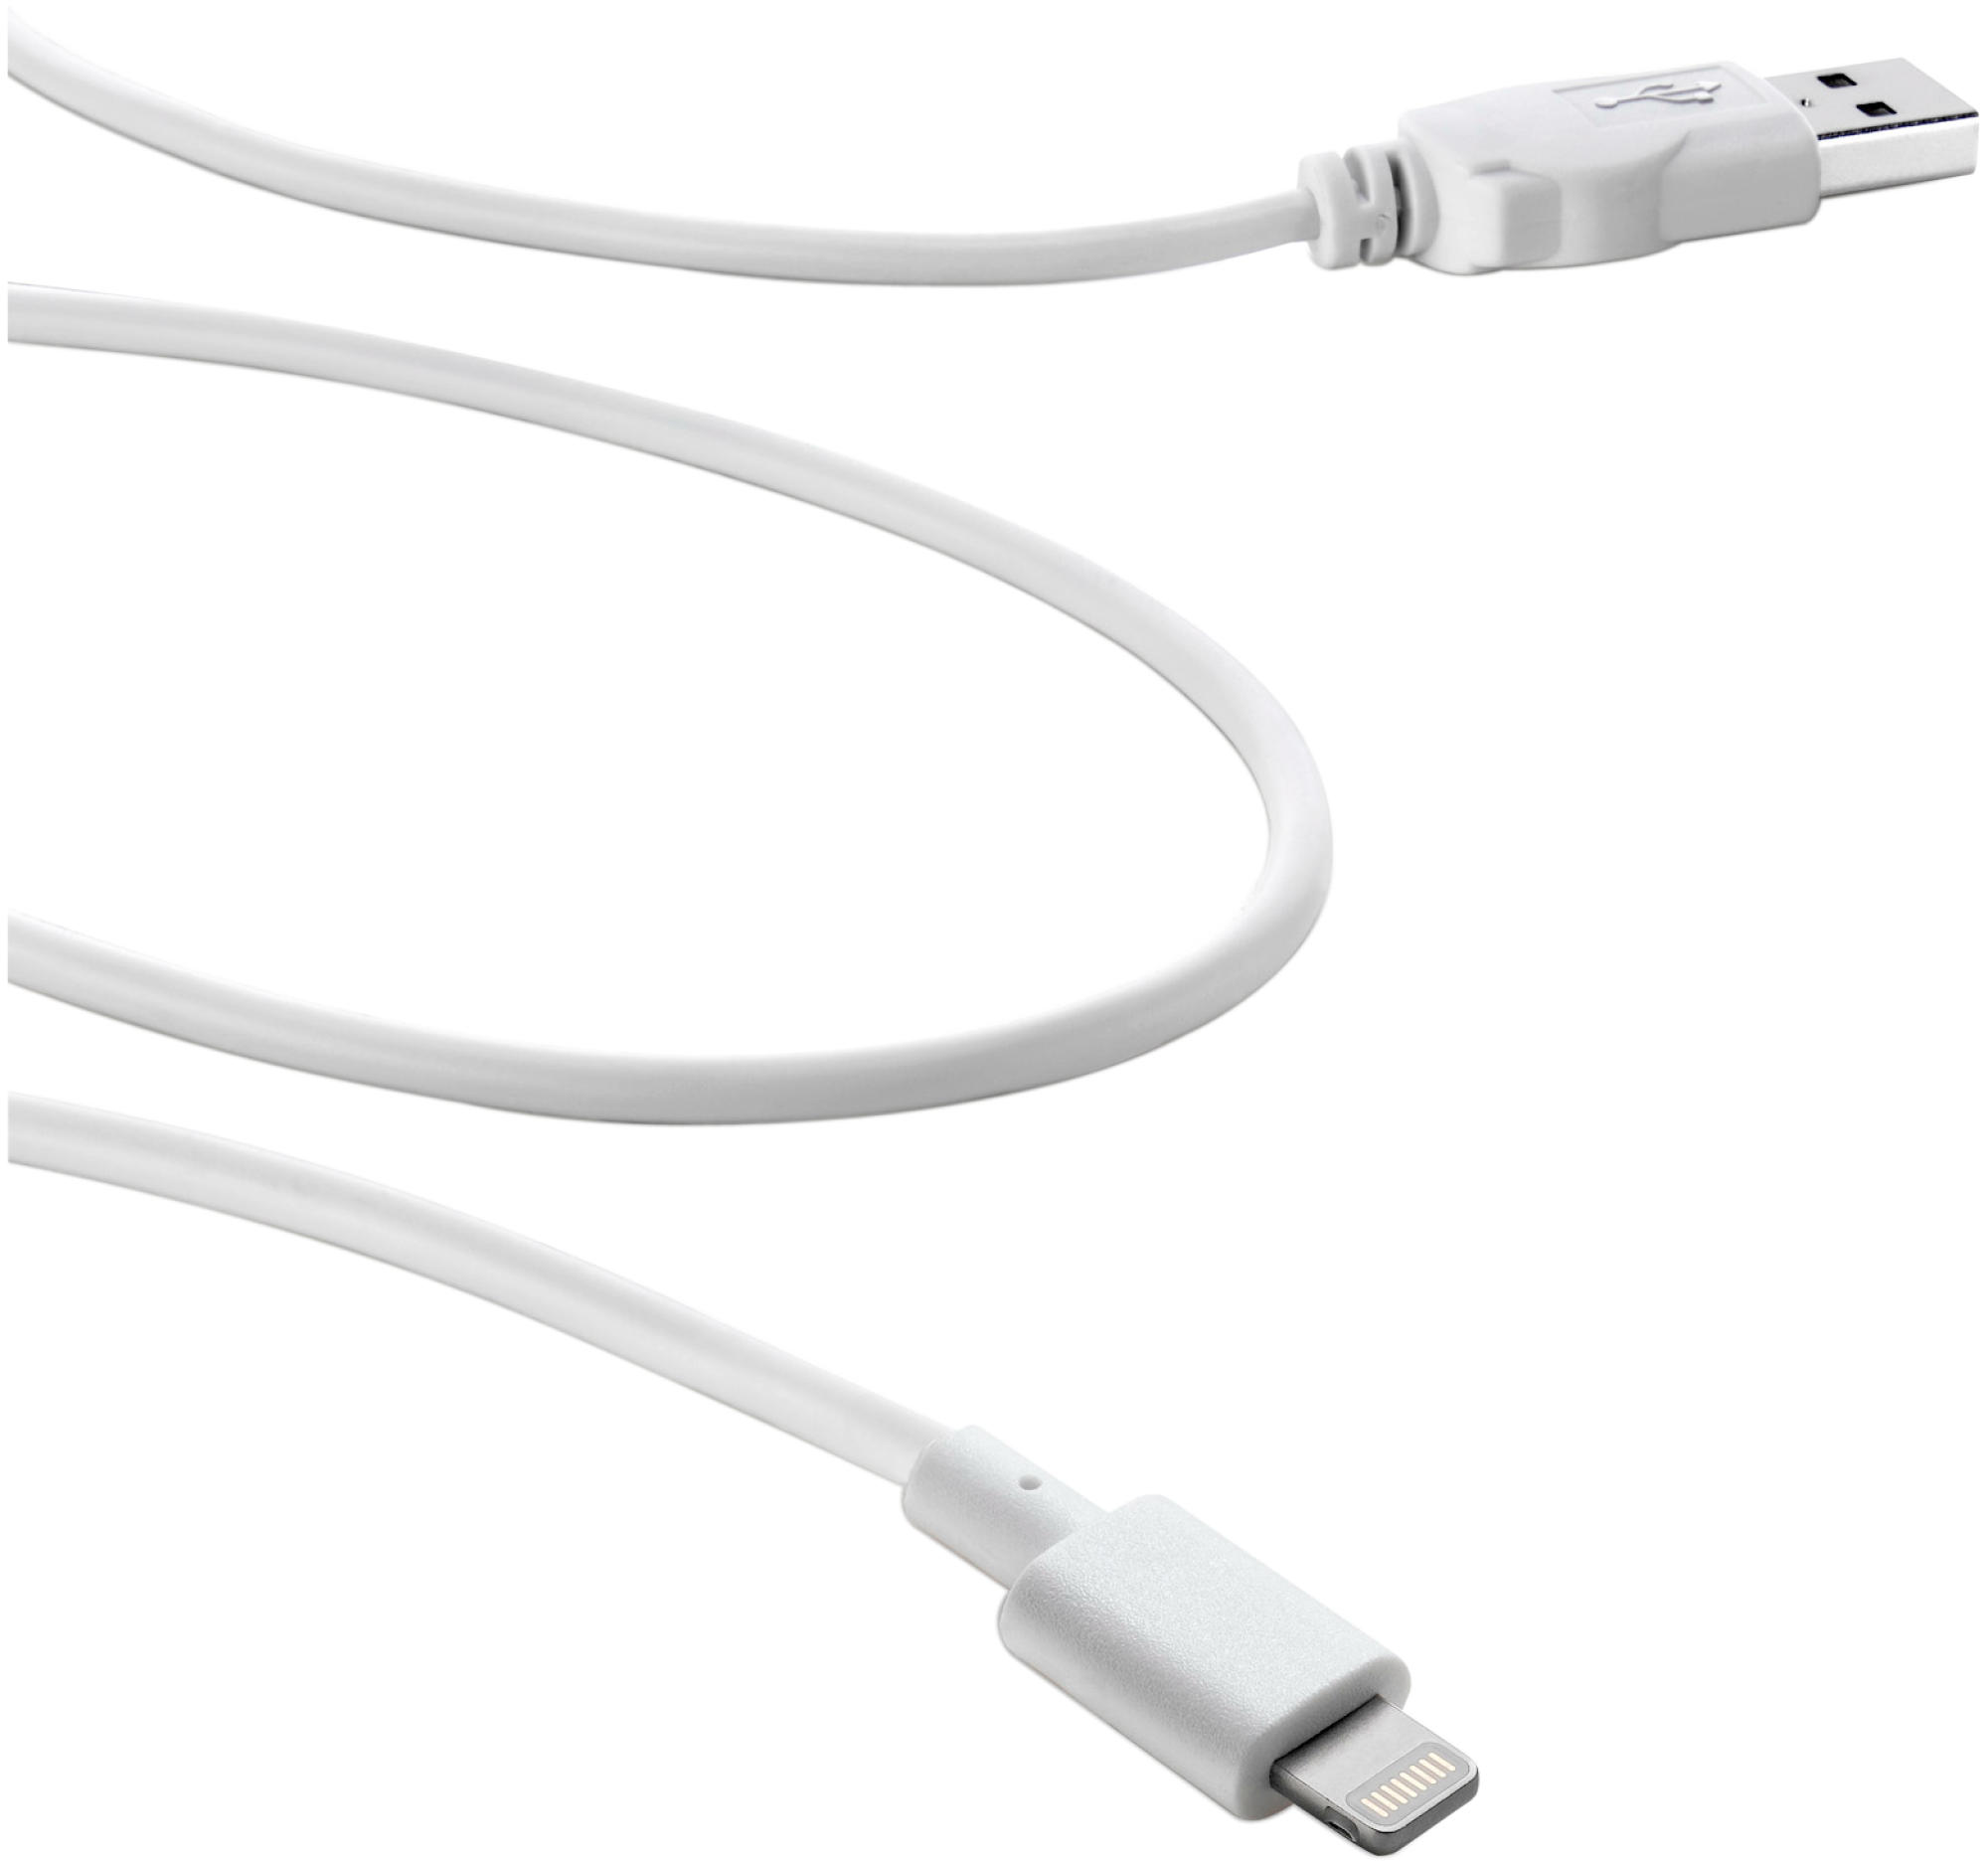 CELLULAR LINE 33772, Weiß 1x USB m, 1 Daten-Kabel